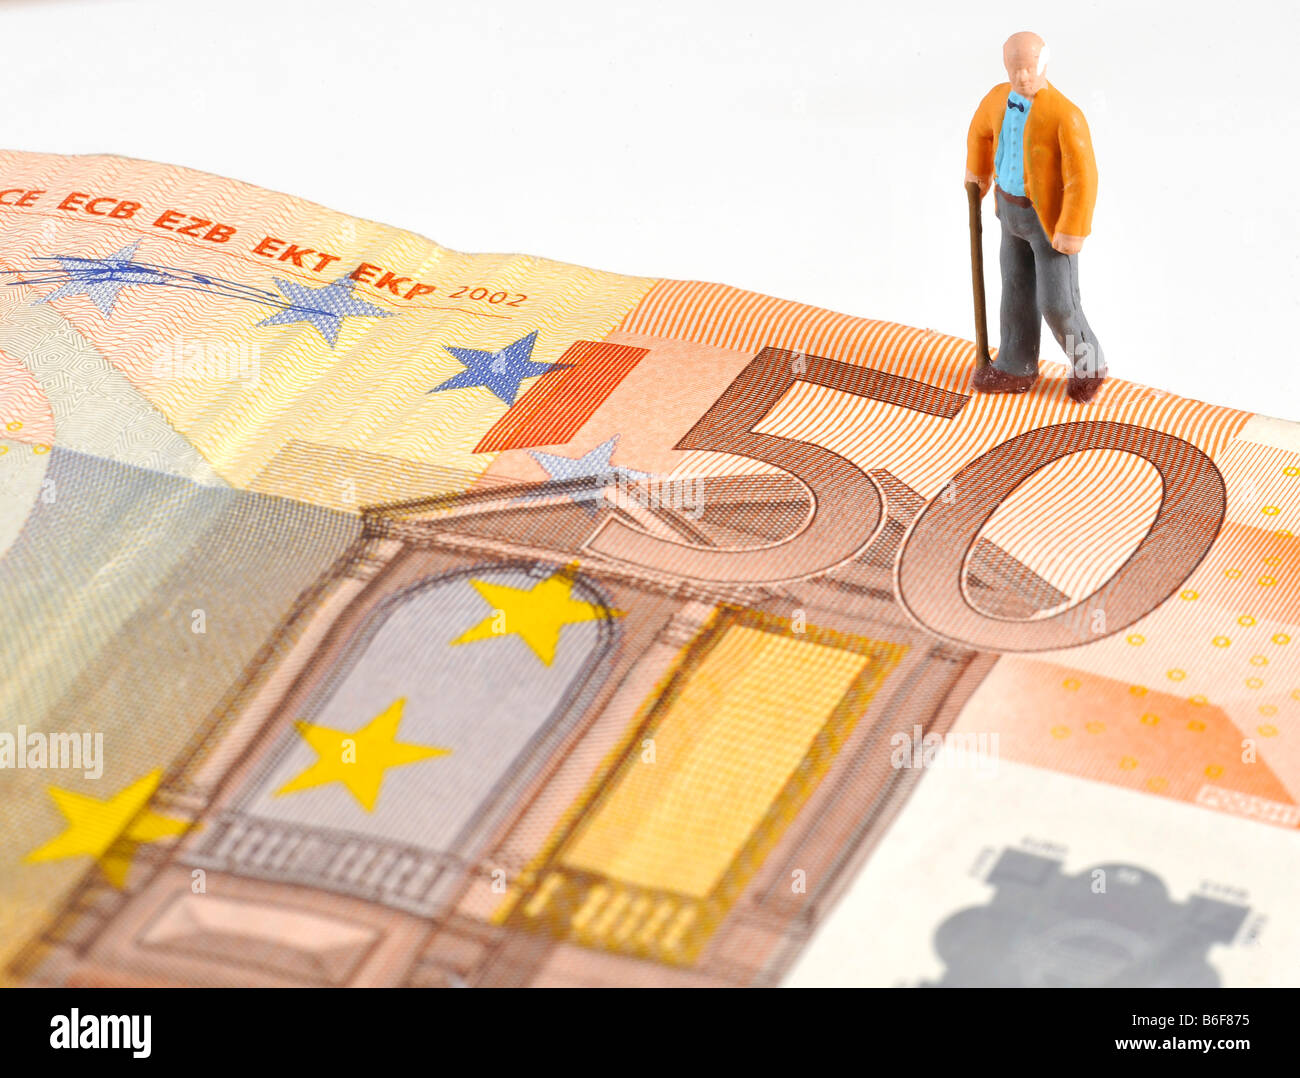 Senior citizen figure foulé un 50 Euro bank note, symbolisant la retraite Banque D'Images